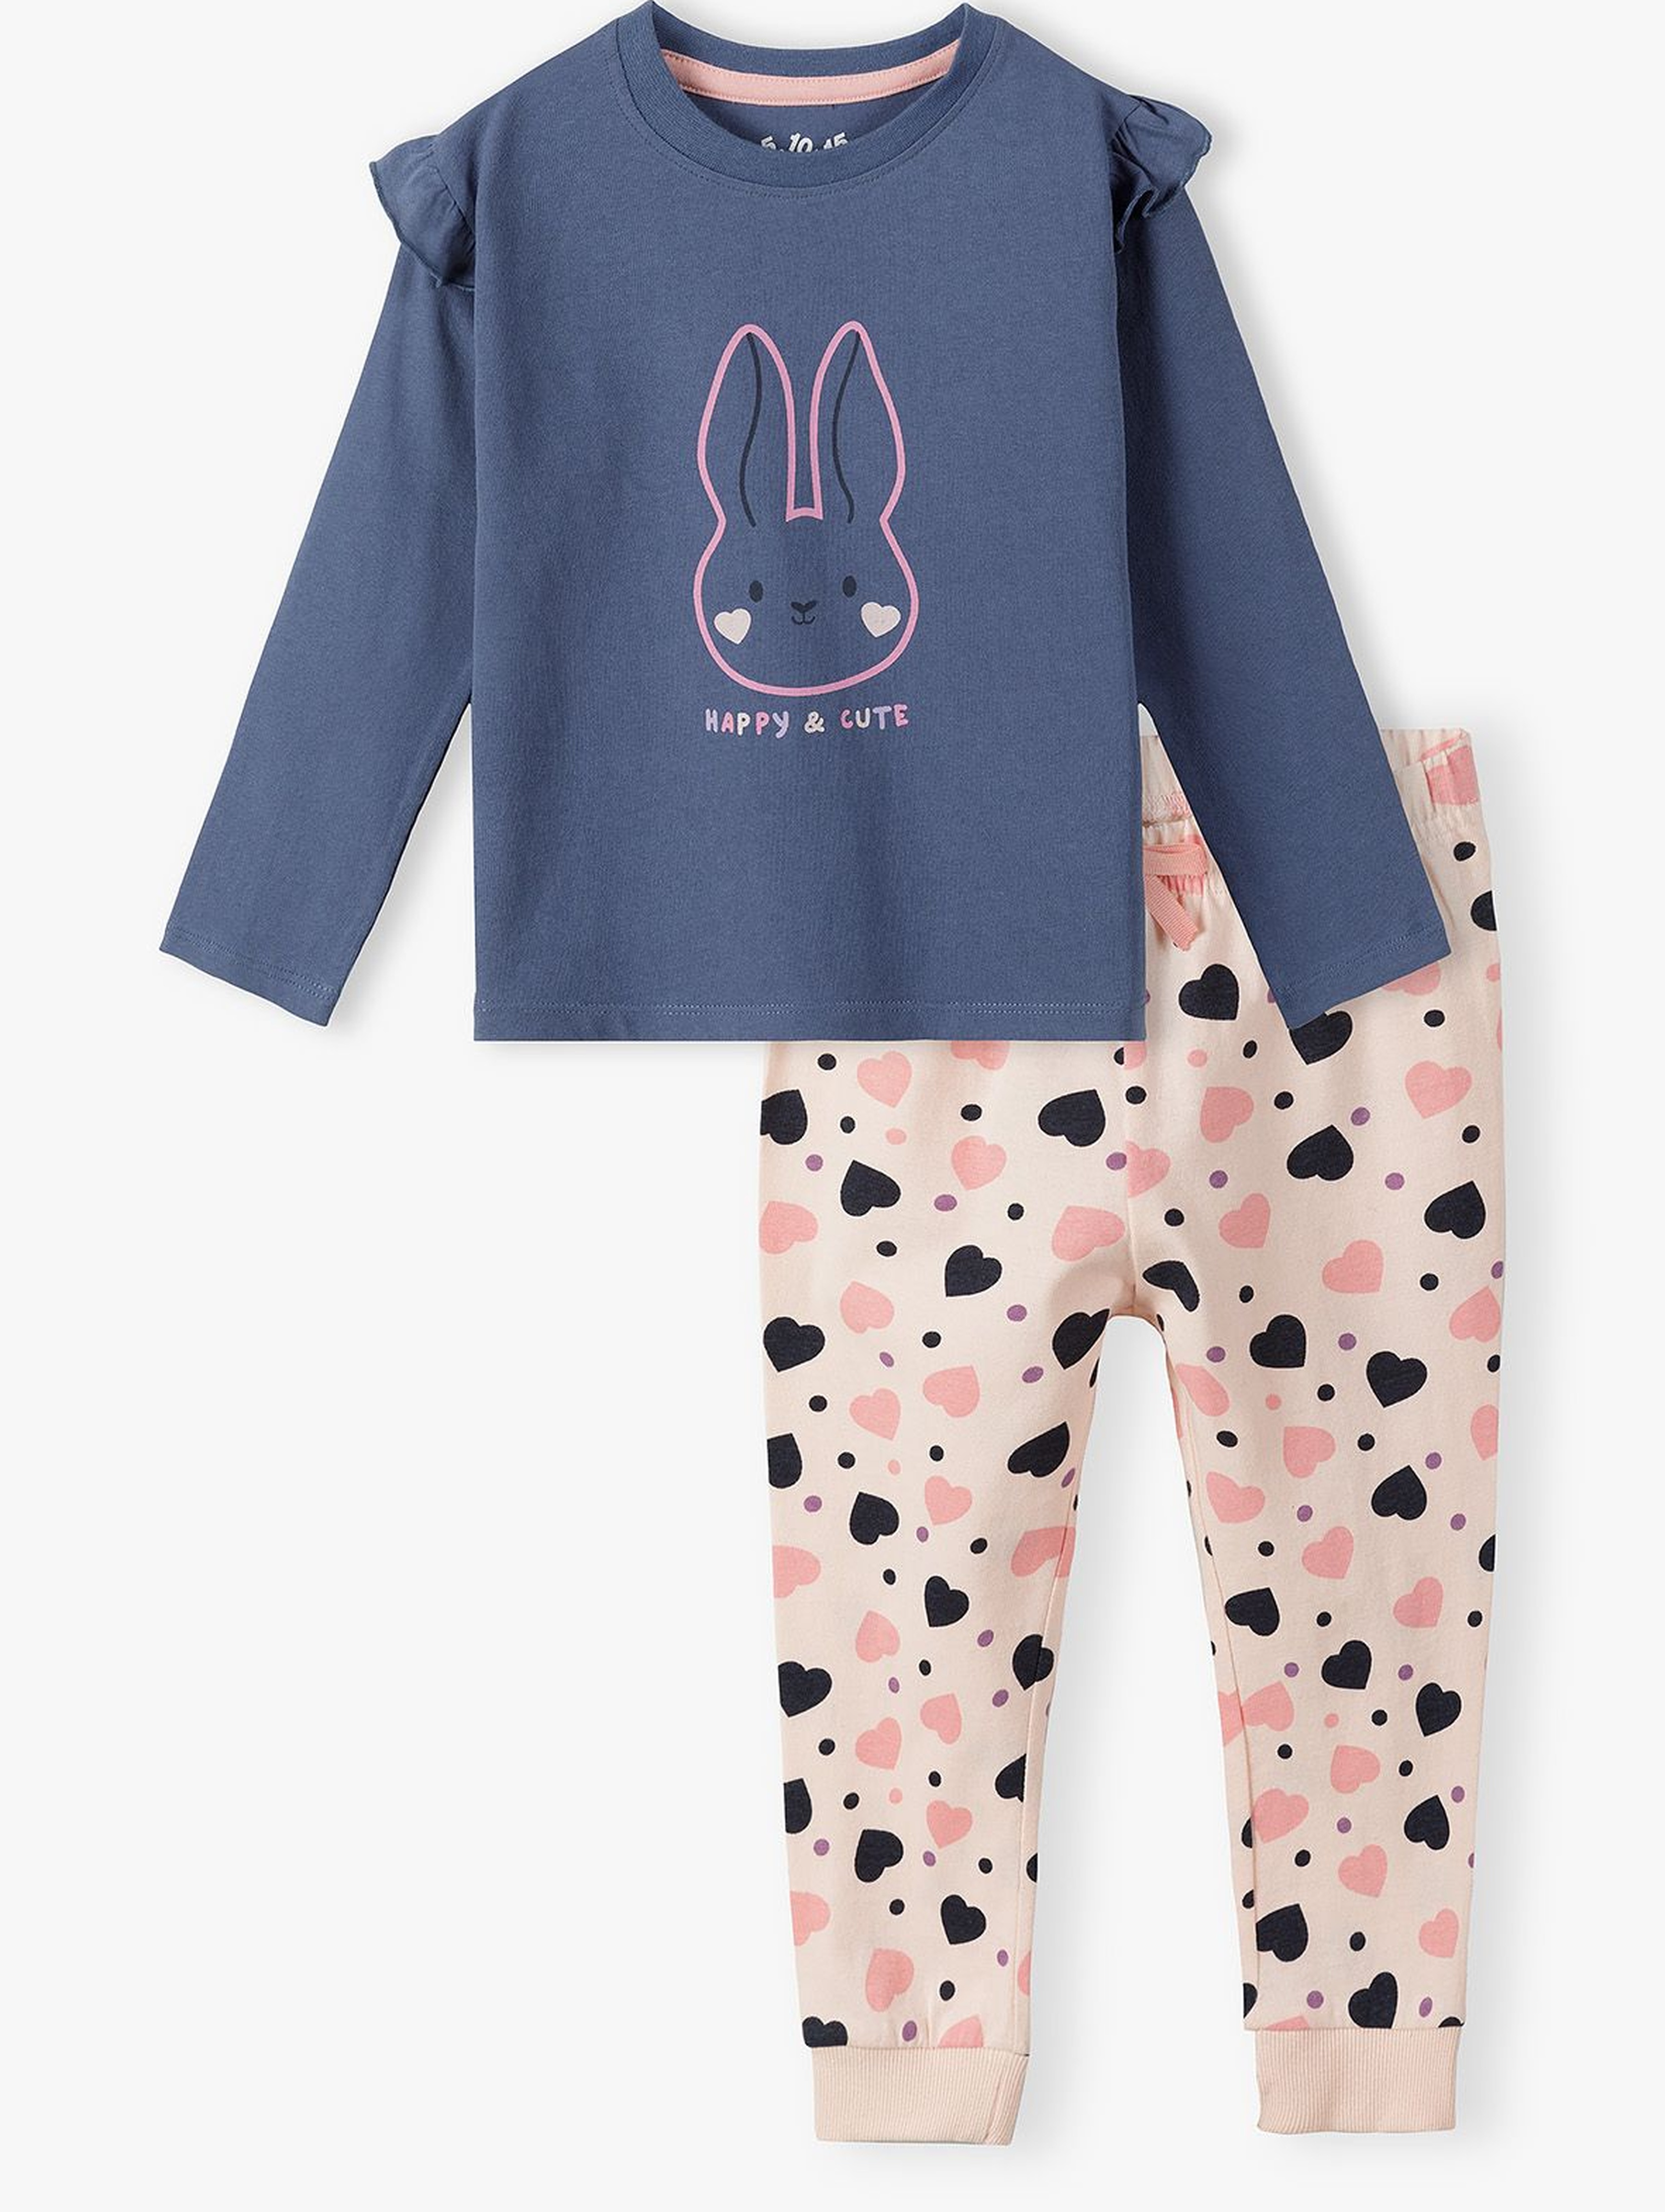 Dwuczęściowa piżama dla dziewczynki - bluzka z długim rękawem + długie spodnie w króliczki - kolorowa